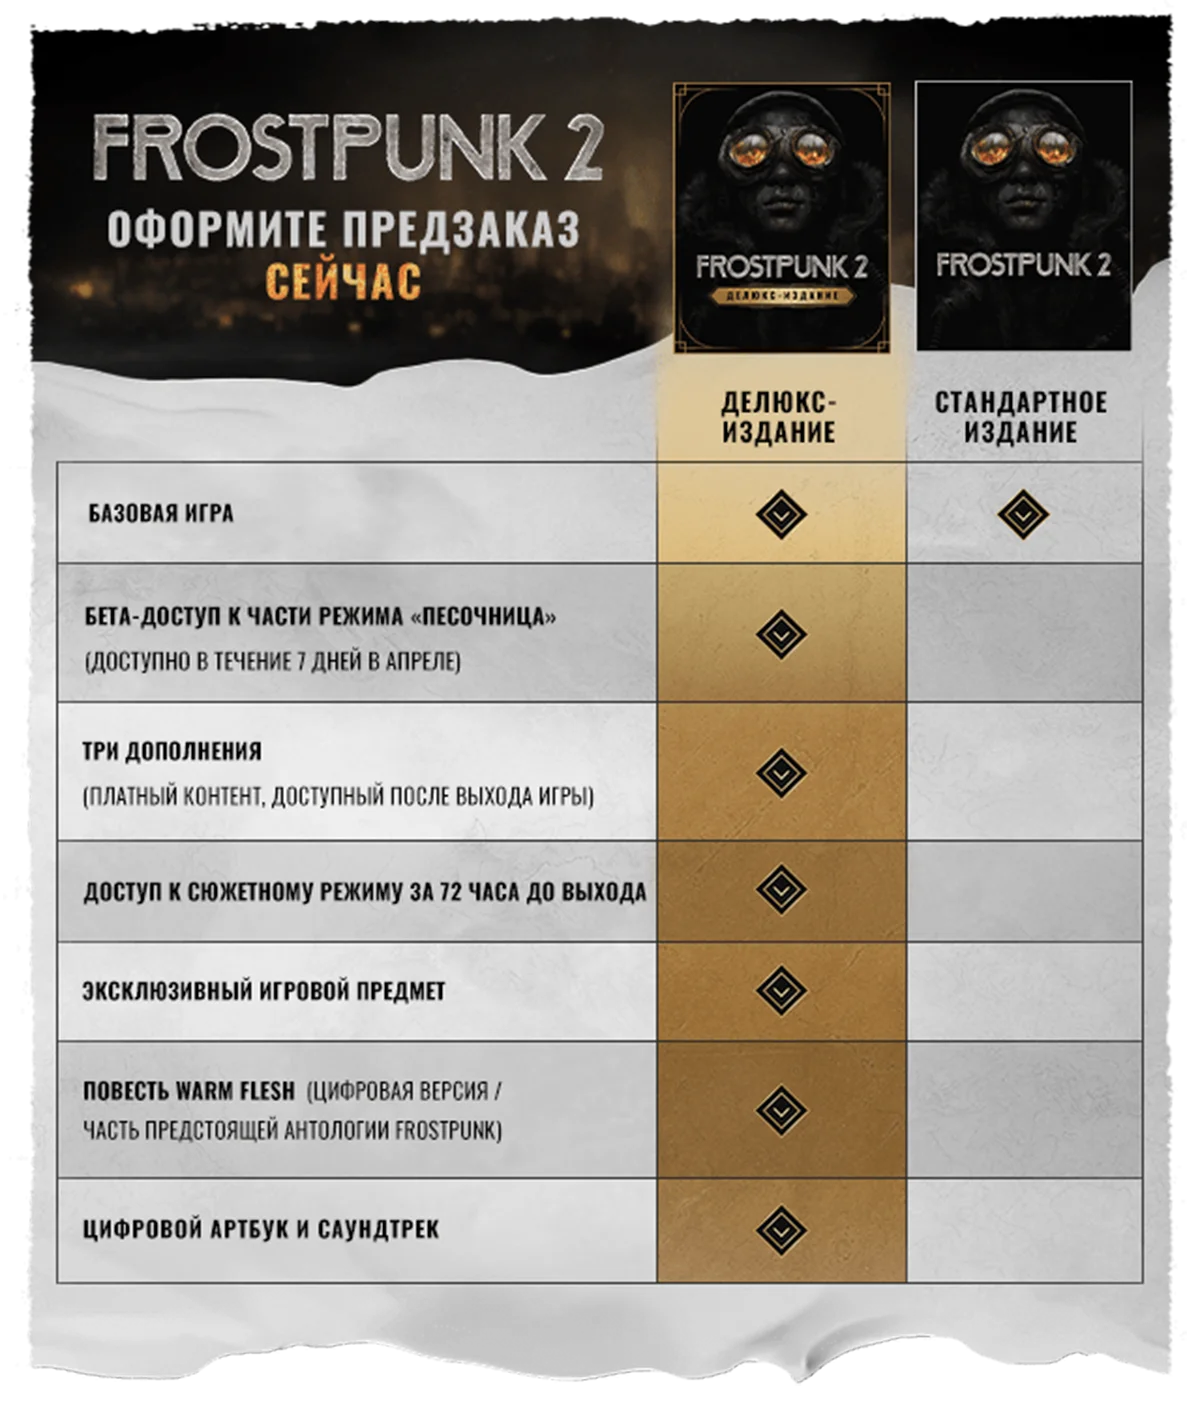 Авторы Frostpunk 2 проведут бета-тест в апреле для предзаказавших Deluxe-издание - фото 2